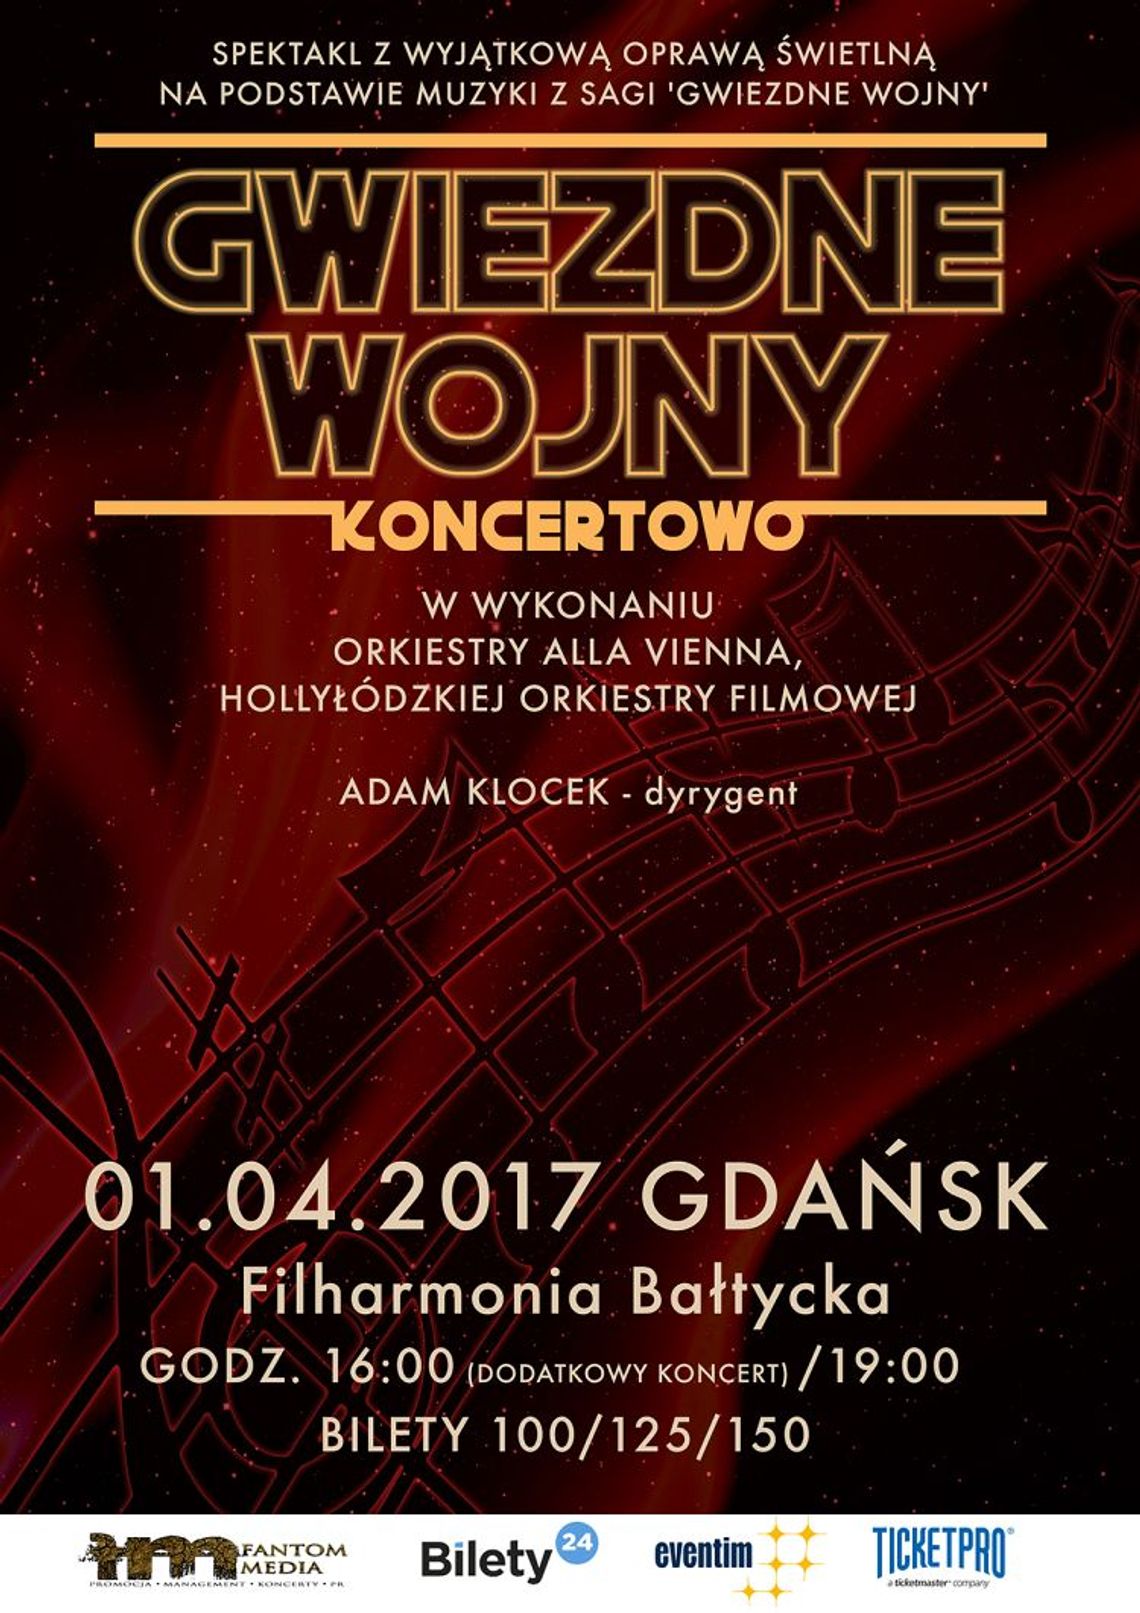 Gwiezdne Wojny Koncertowo w Filharmonii Bałtyckiej